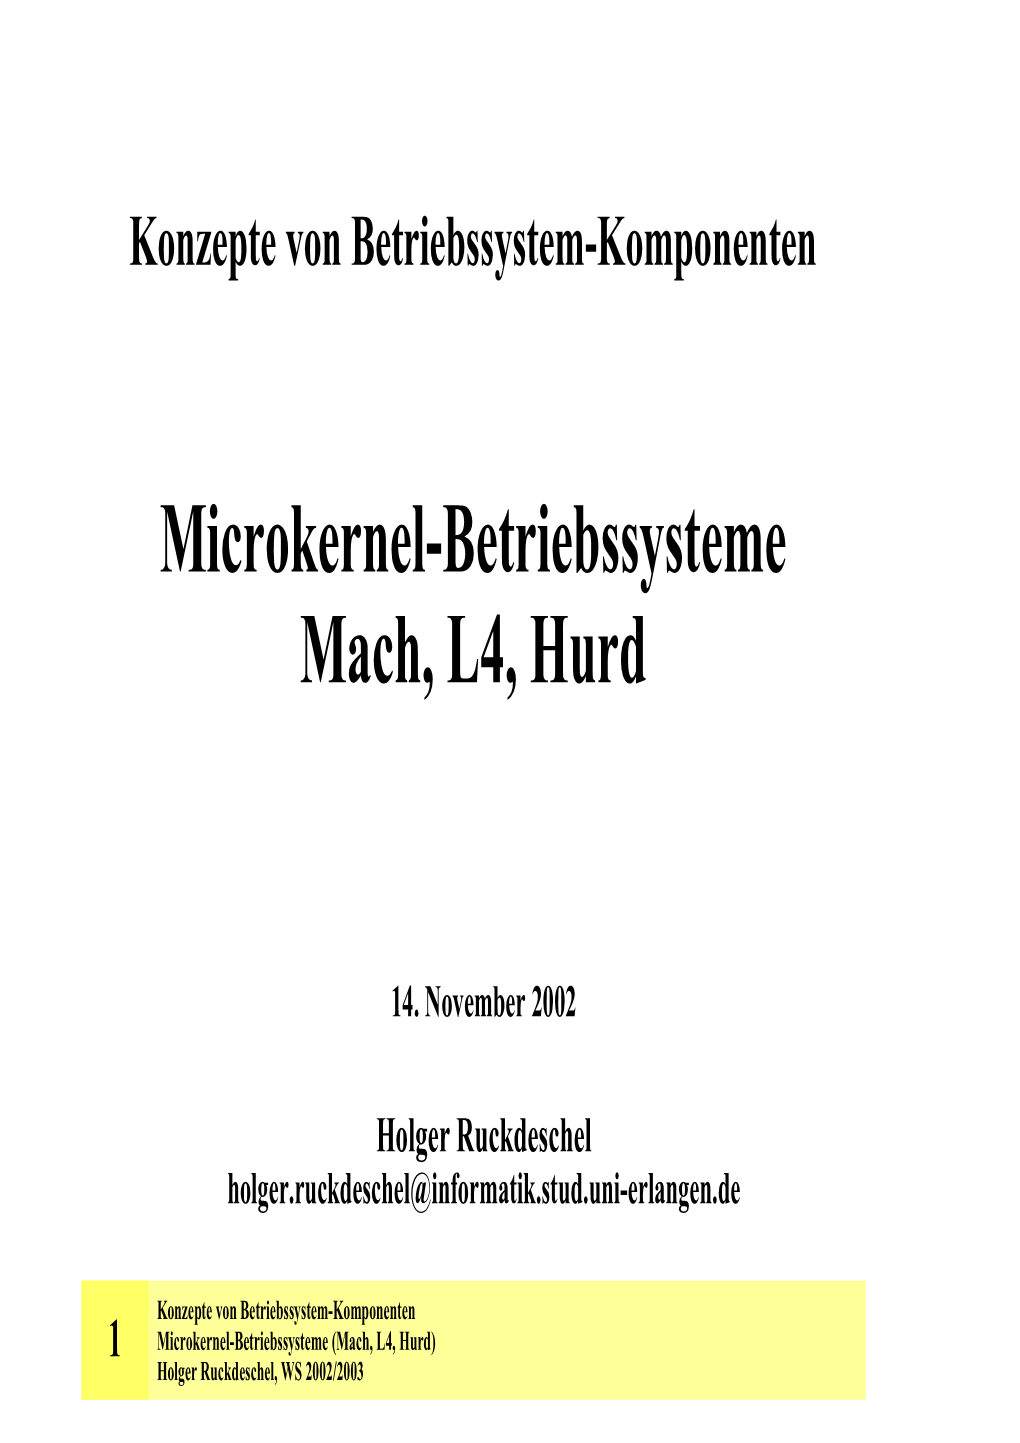 Microkernel-Betriebssysteme Mach, L4, Hurd